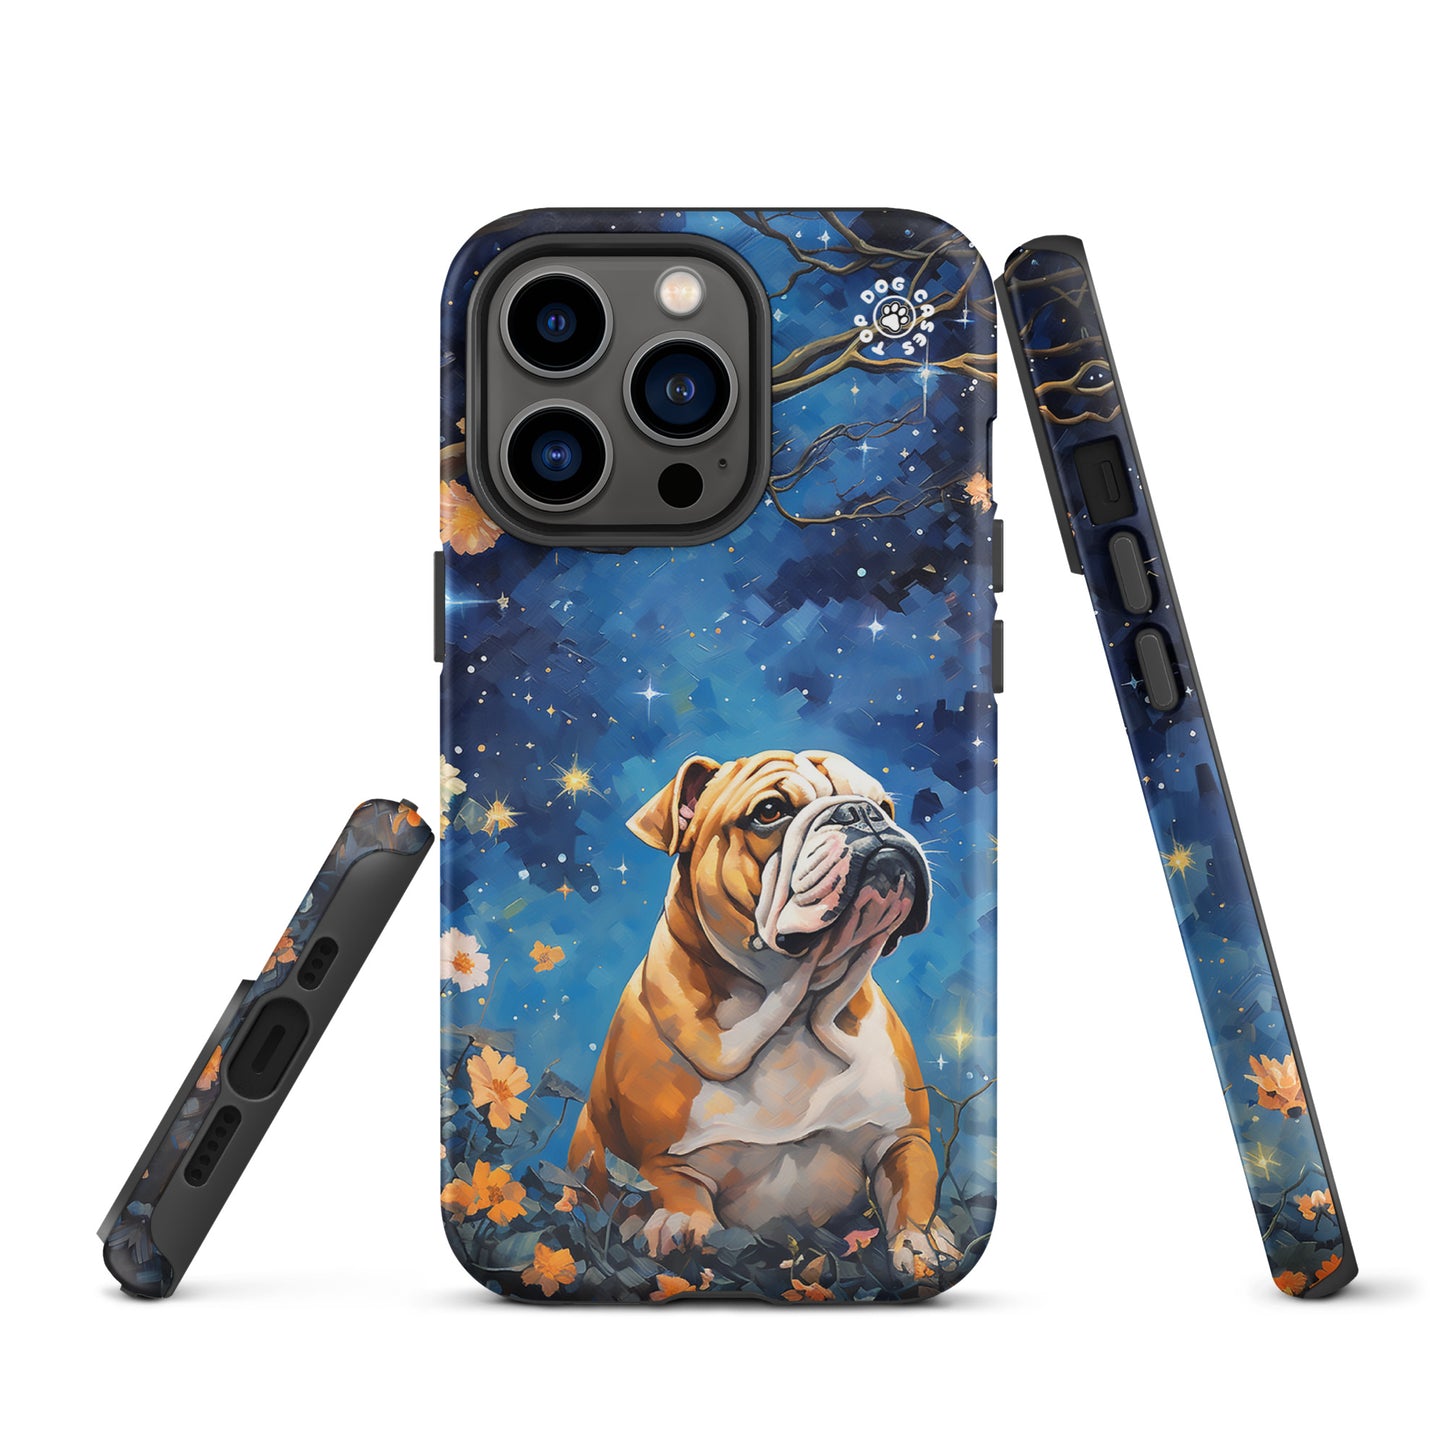 Bulldog - iPhone 13 Case - Cute Phone Cases - Top Dog Cases - #Bulldog, #CuteDog, #CuteDogs, #CutePhoneCases, #DogPhoneCase, #dogs, #iPhone, #iPhone13, #iPhone13case, #iPhone13DogCase, #iPhone13Mini, #iPhone13Pro, #iPhone13ProMax, #iphonedogcase